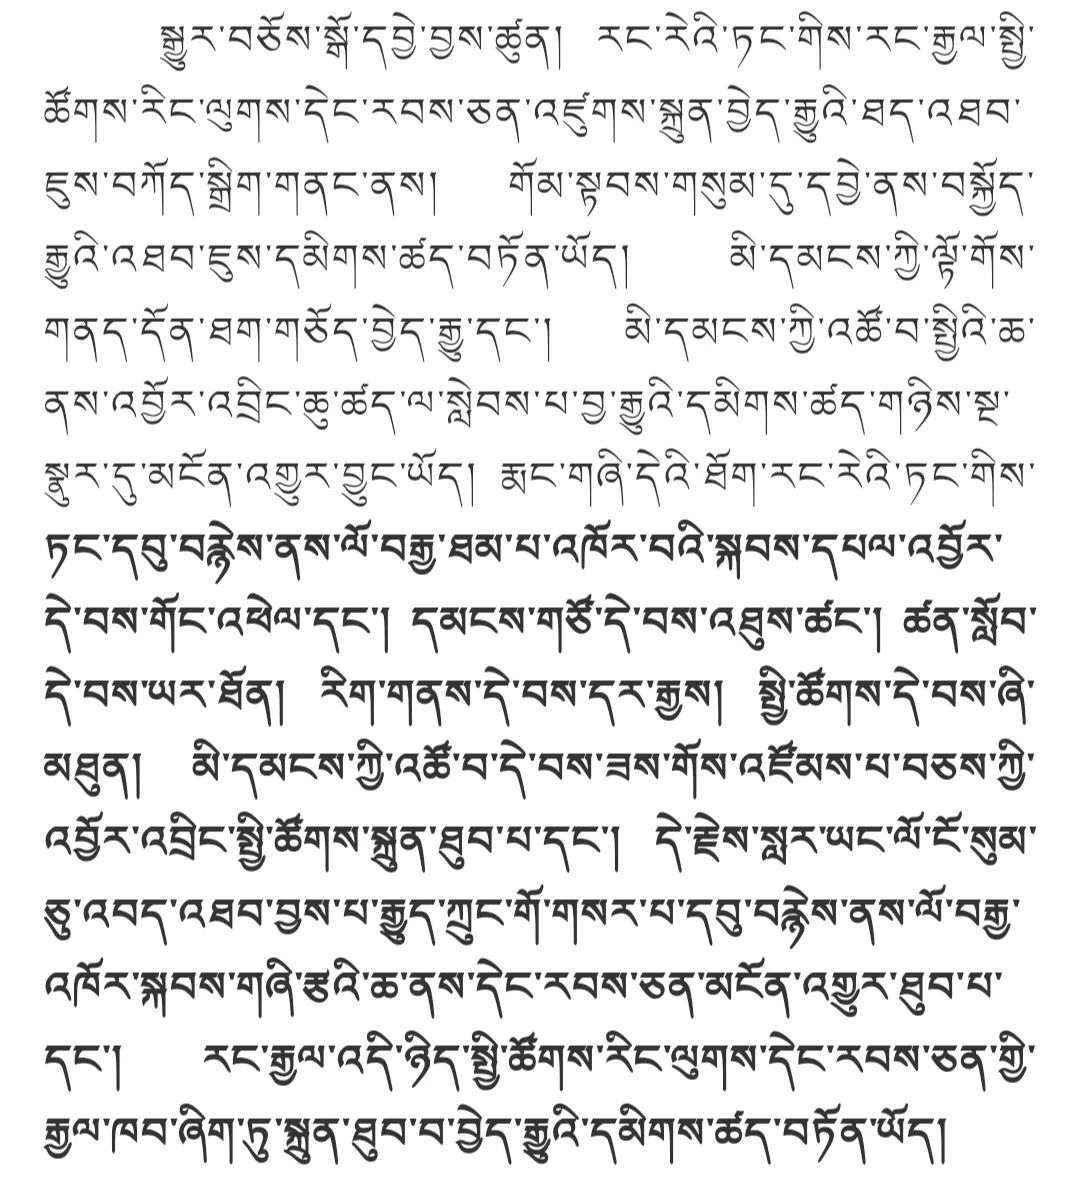 萨迦格言全文 藏汉文图片